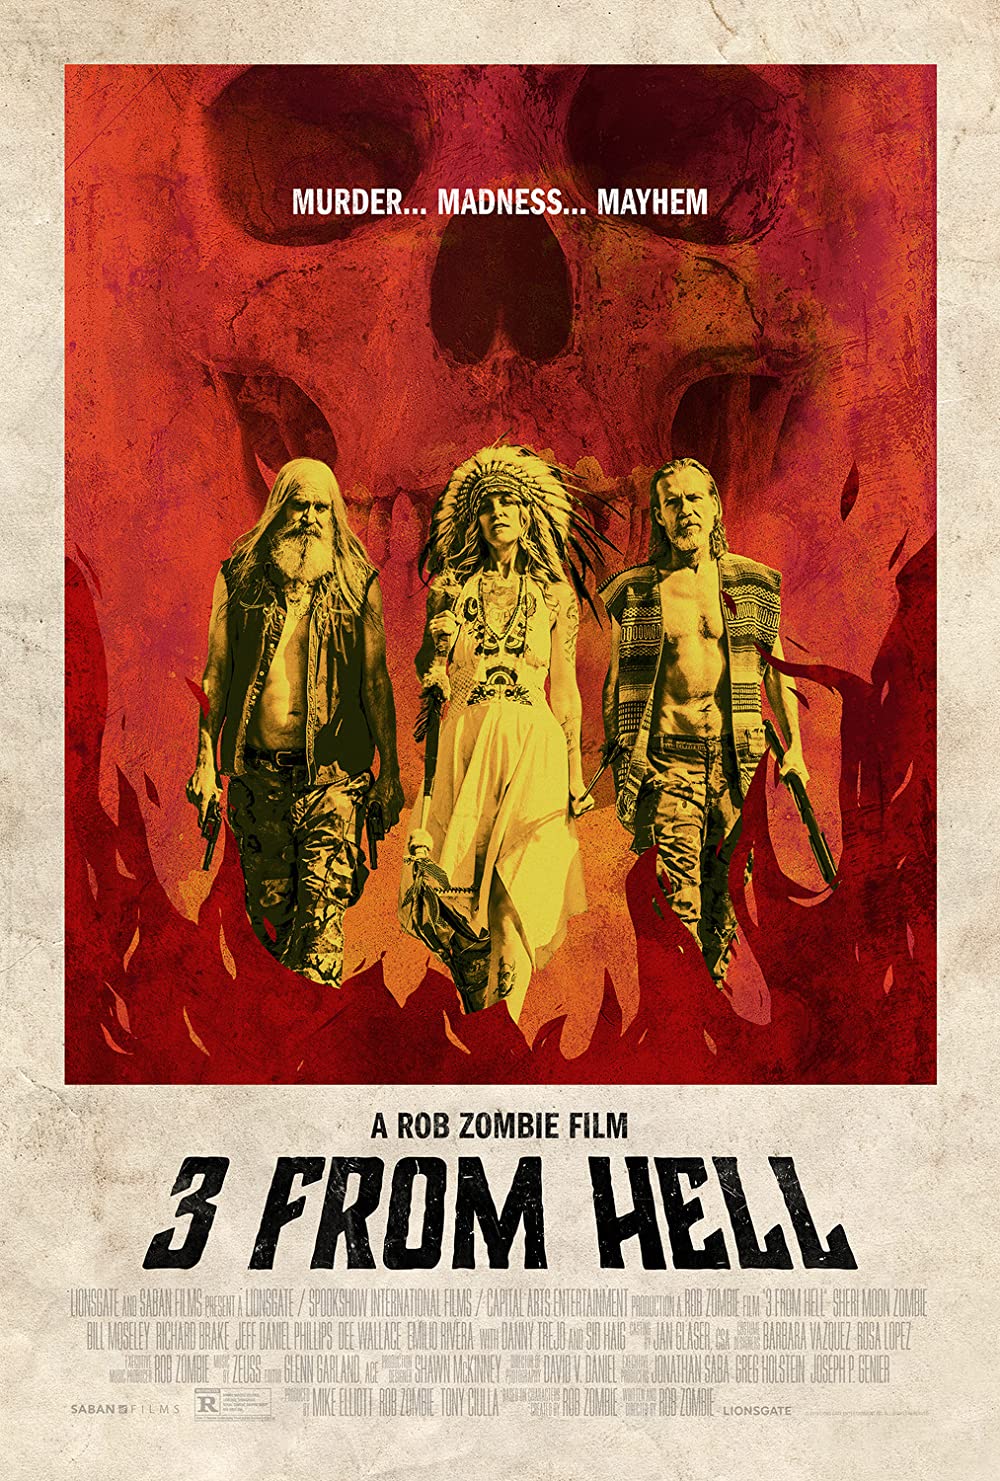 Filmbeschreibung zu 3 from Hell